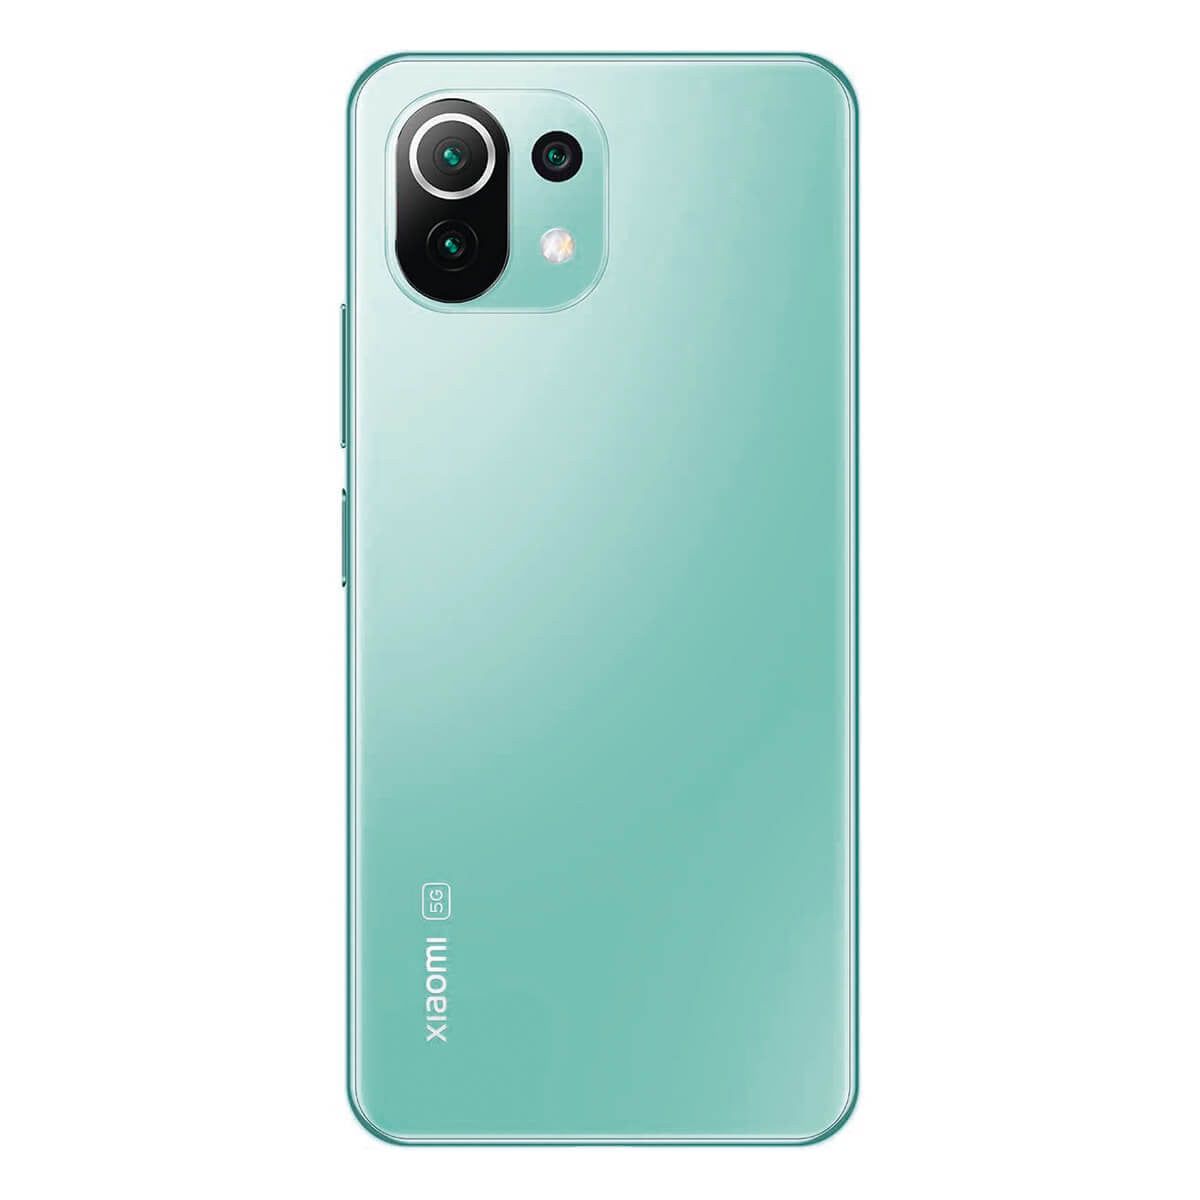 Xiaomi 11 Lite 5G NE 8GB/128GB Verde Menta (Mint Green) Dual SIM Smartphone | Xiaomi